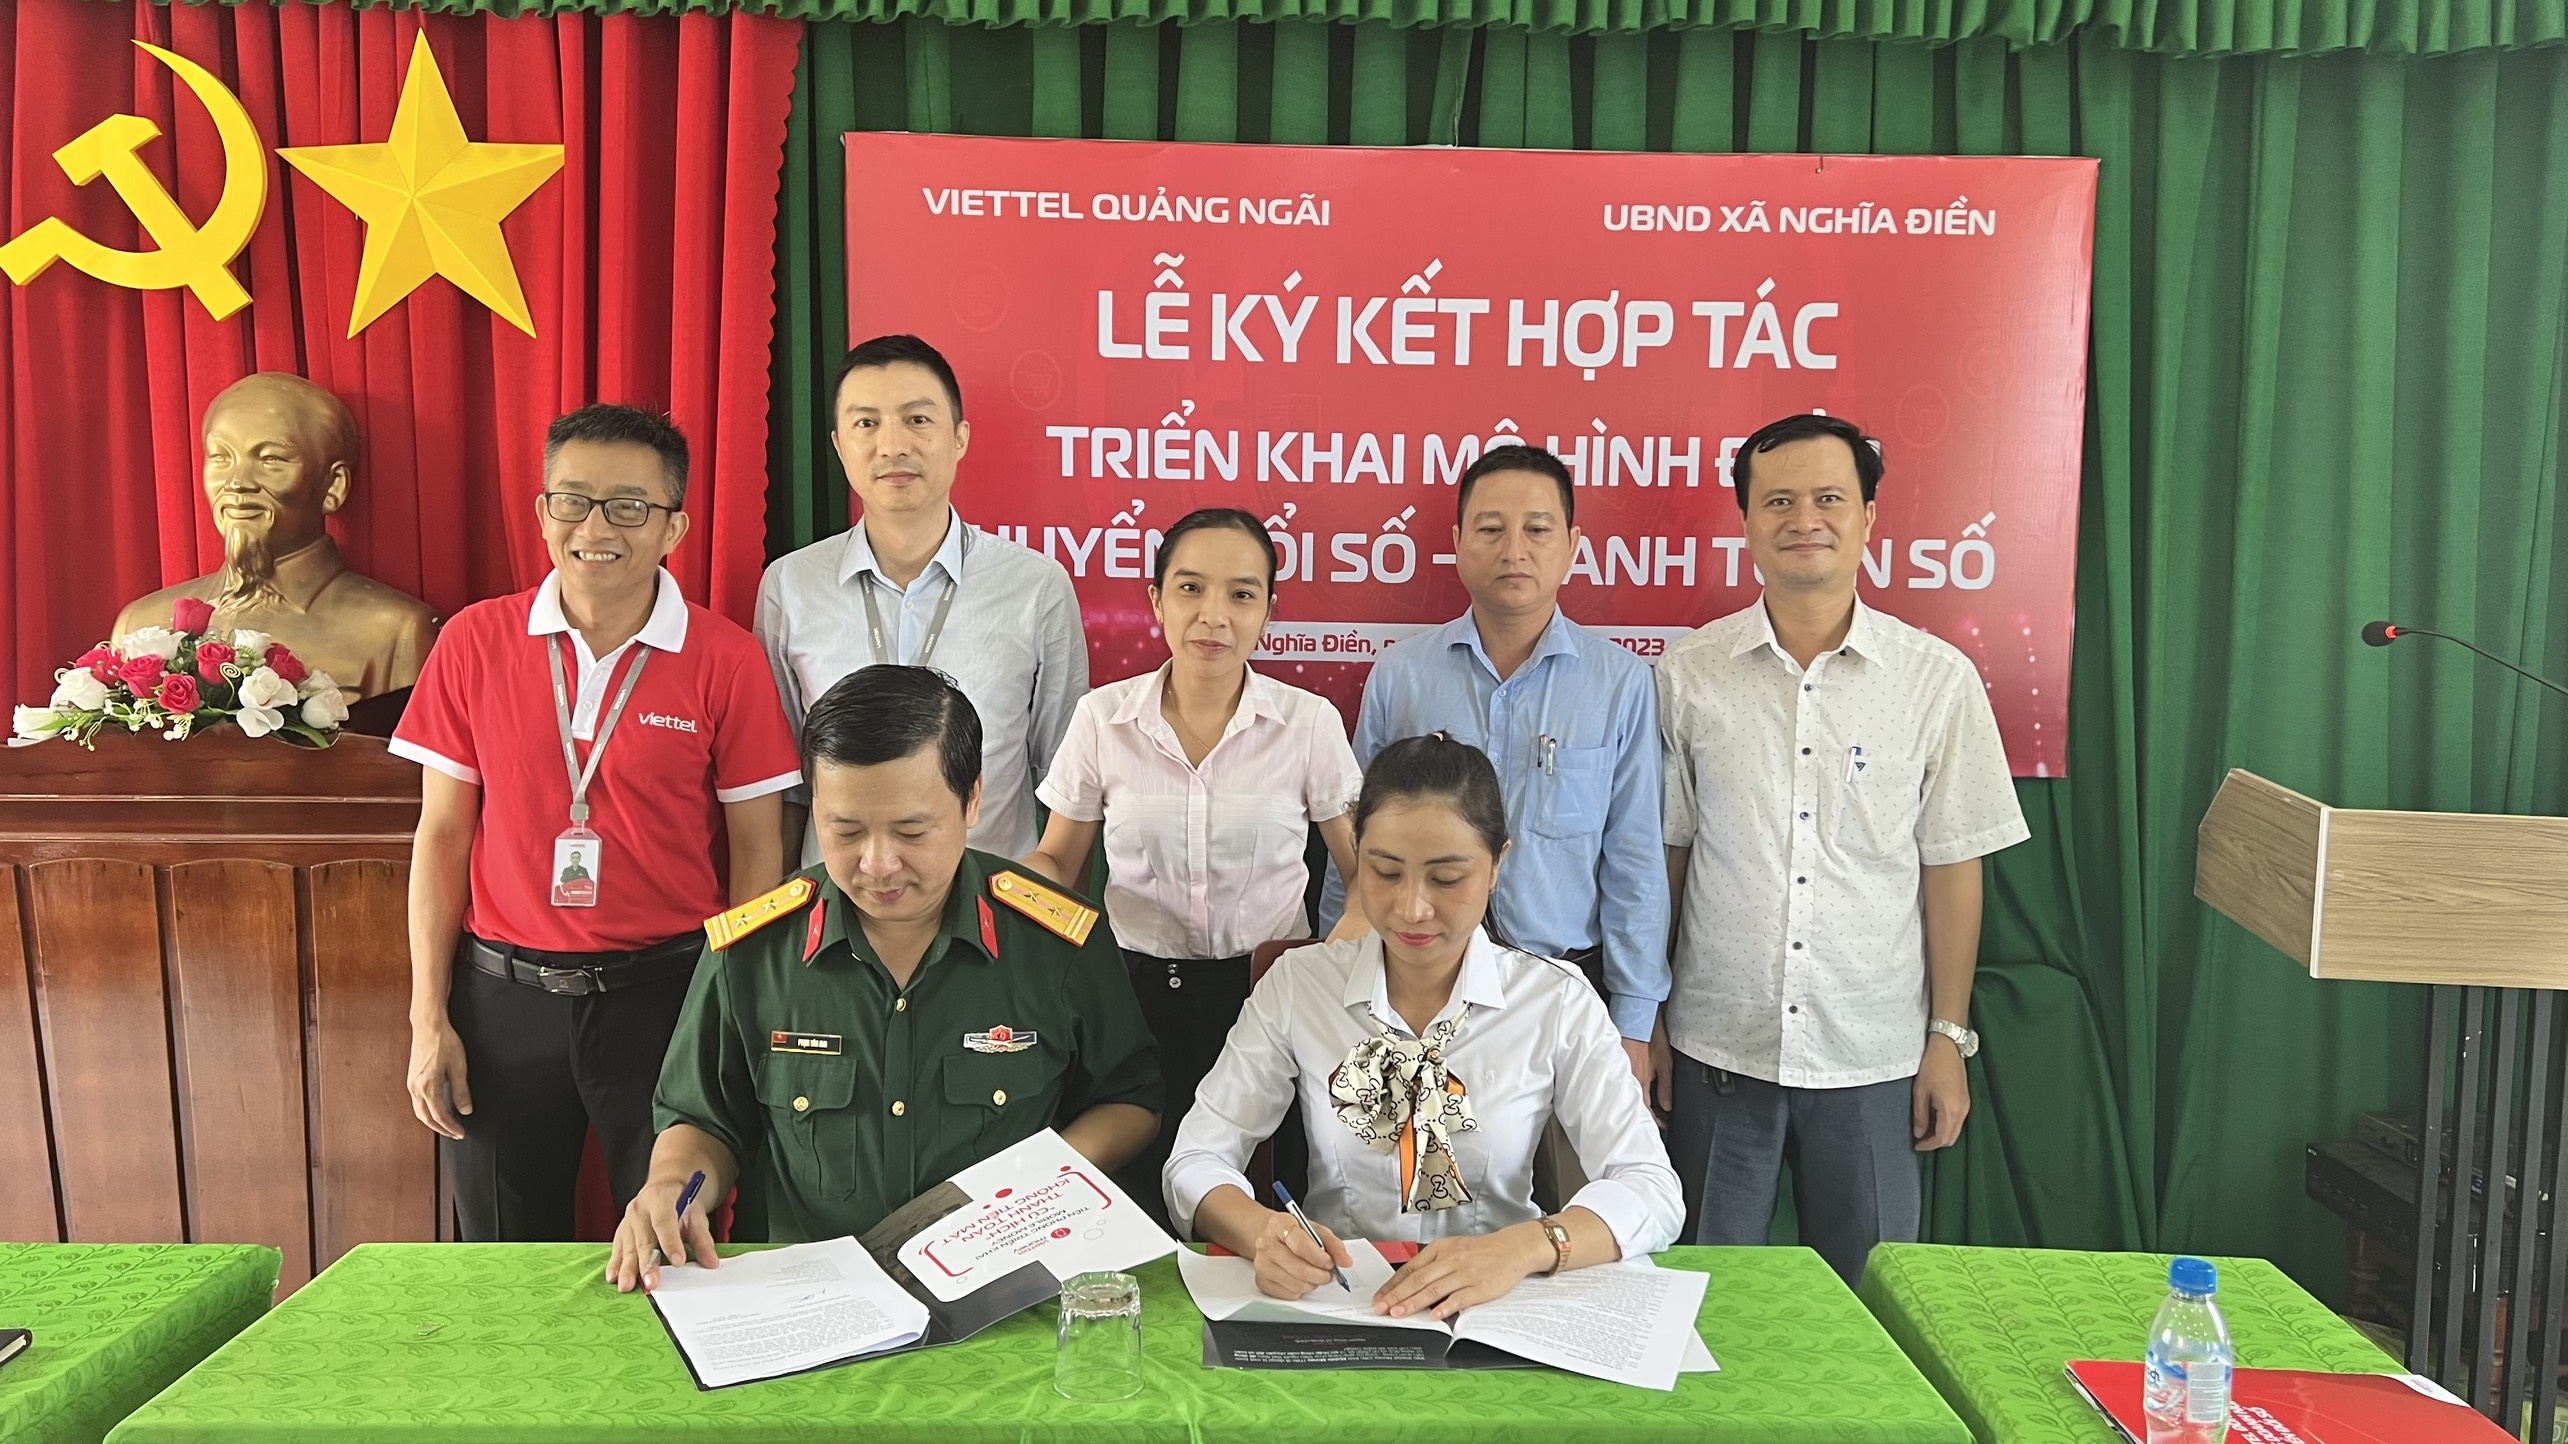 Ký kết hợp tác giữa UBND xã Nghĩa Điền và Viettel Quảng Ngãi.